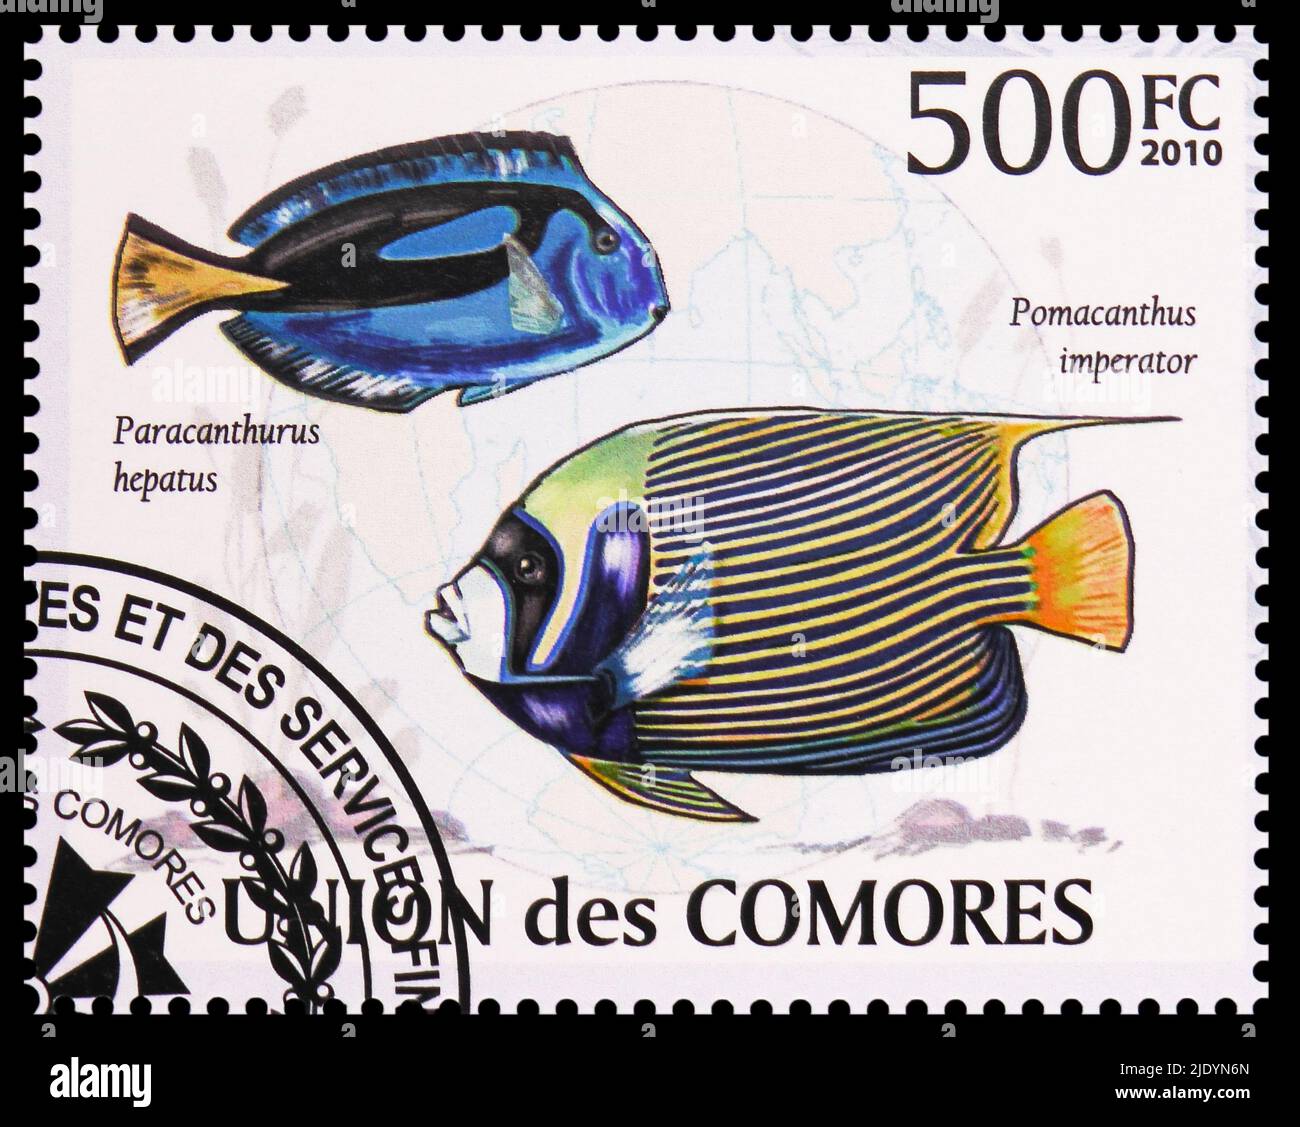 MOSCOU, RUSSIE - 17 JUIN 2022: Timbre-poste imprimé aux Comores montre Palette Surgeonfish (Paracanthurus hepatus), Empereur Angelfish (Pomacanthus imp Banque D'Images